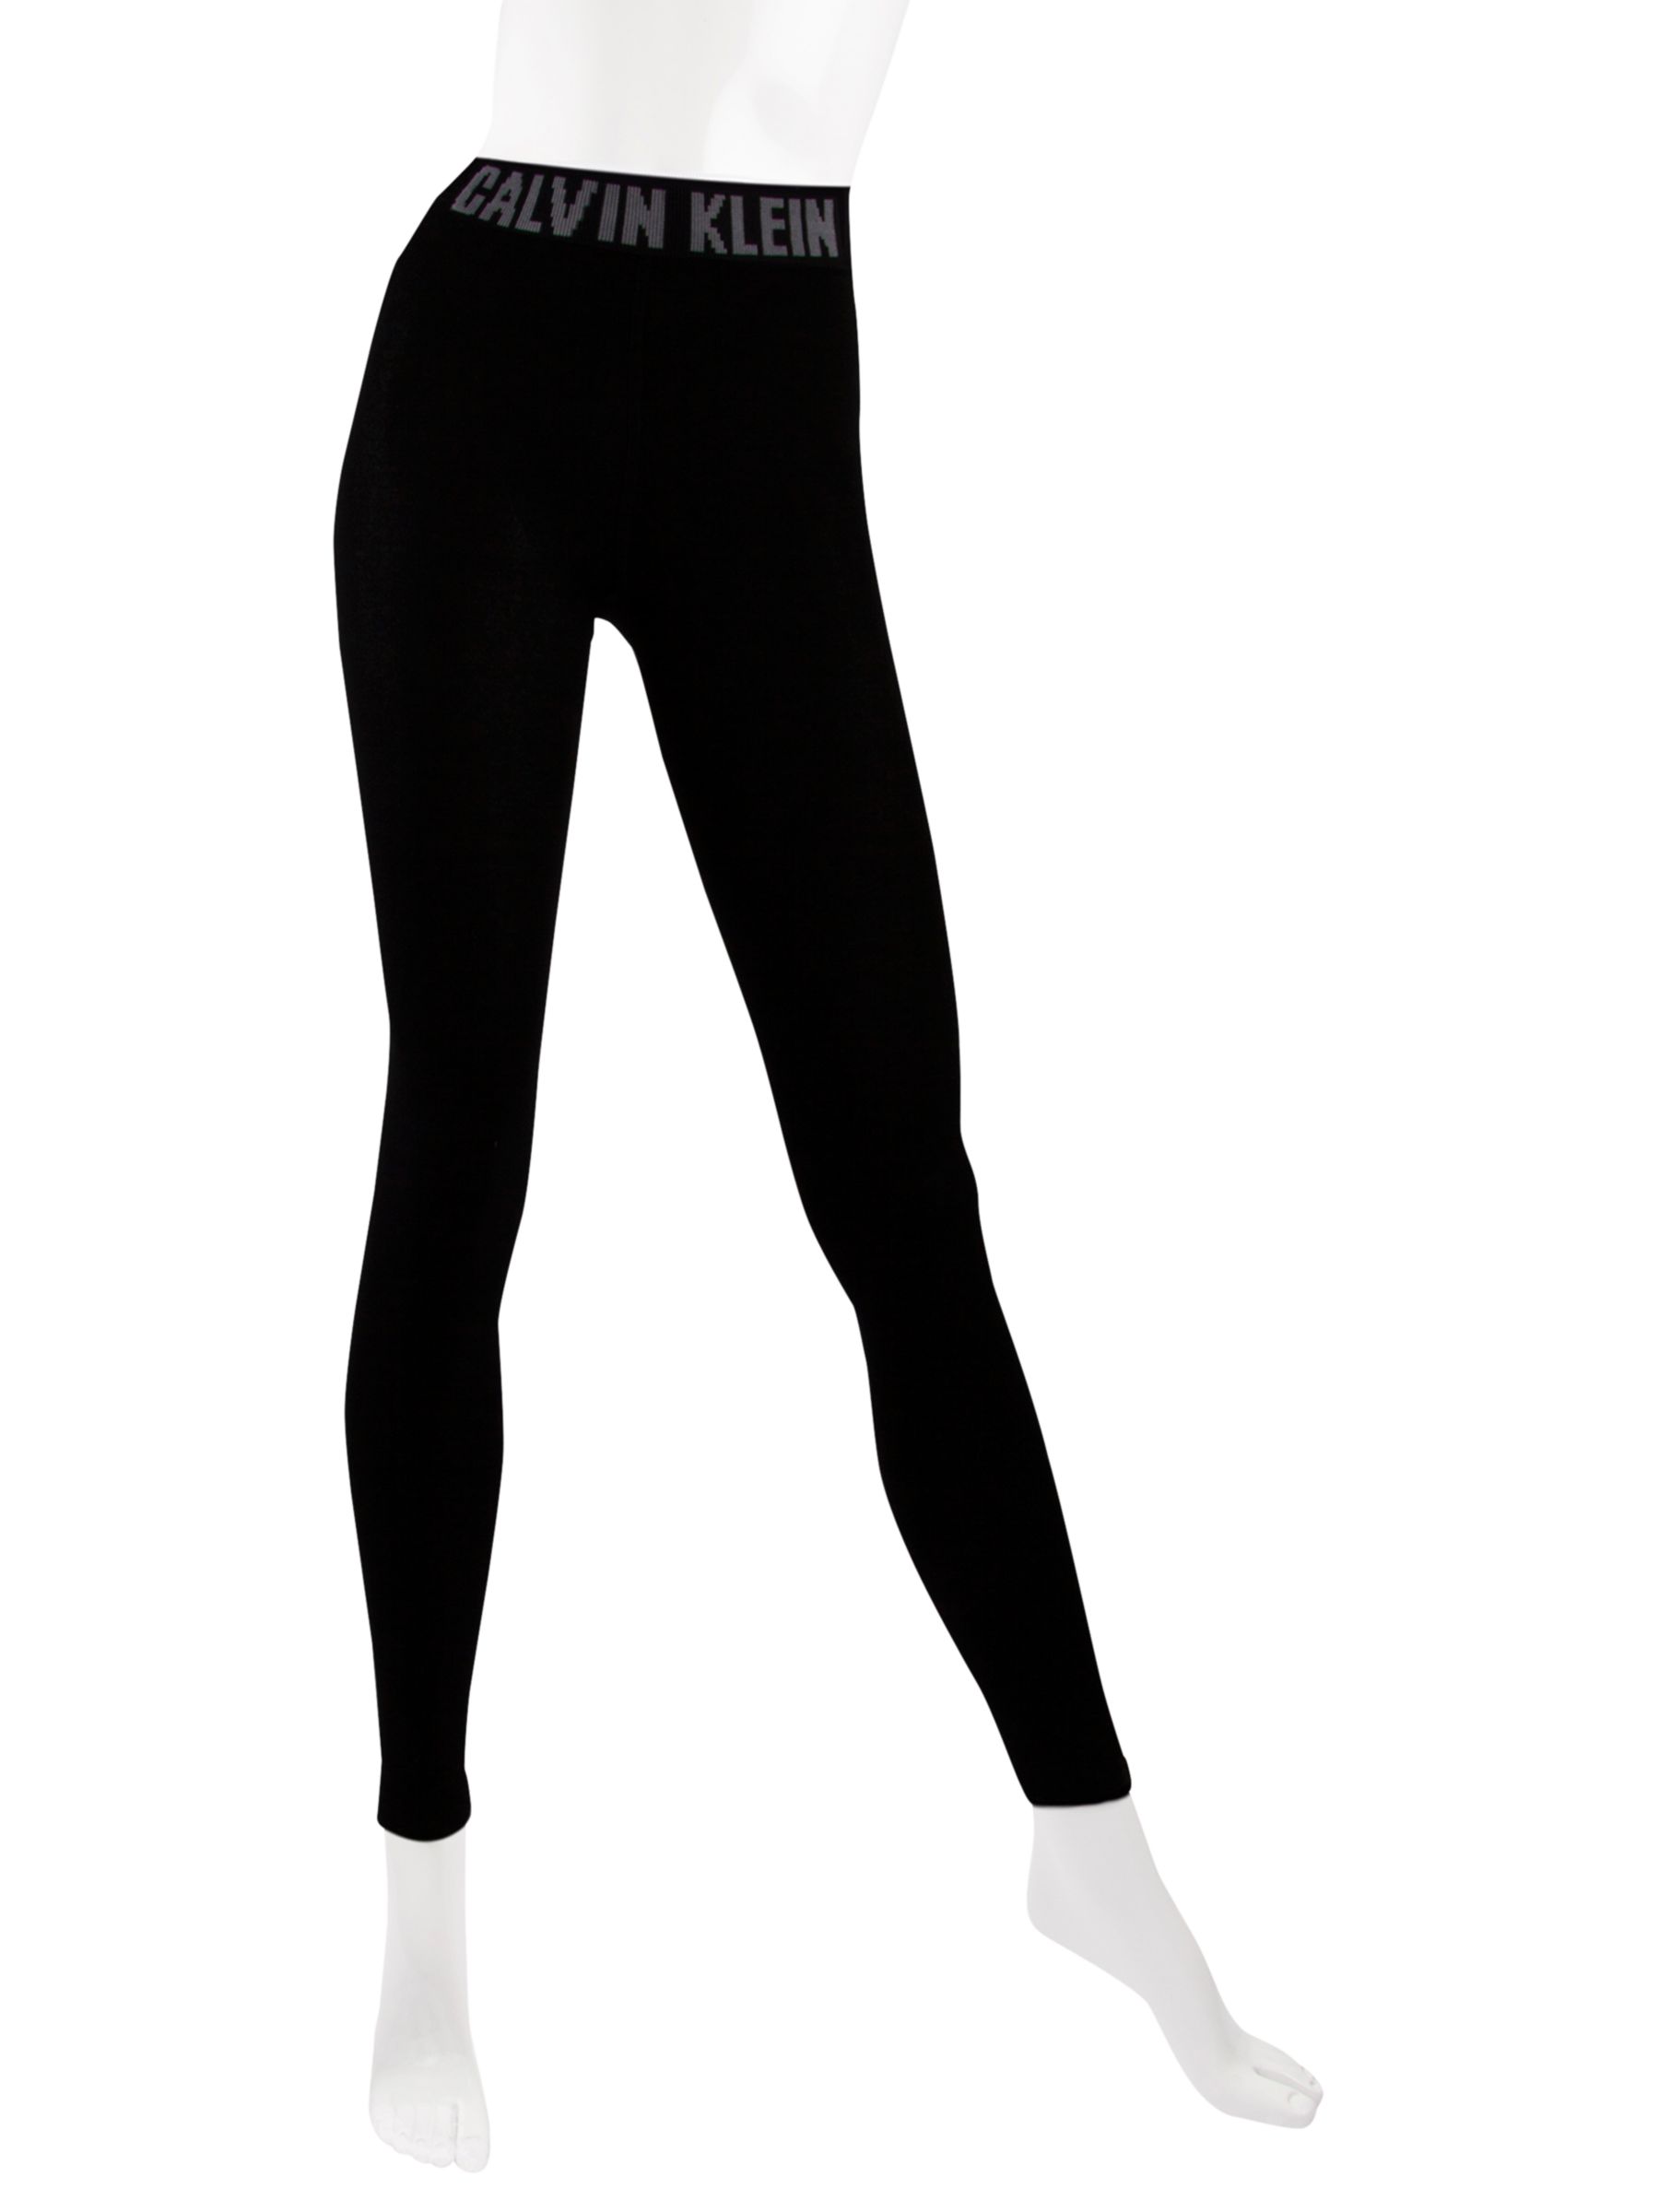 calvin klein logo leggings black